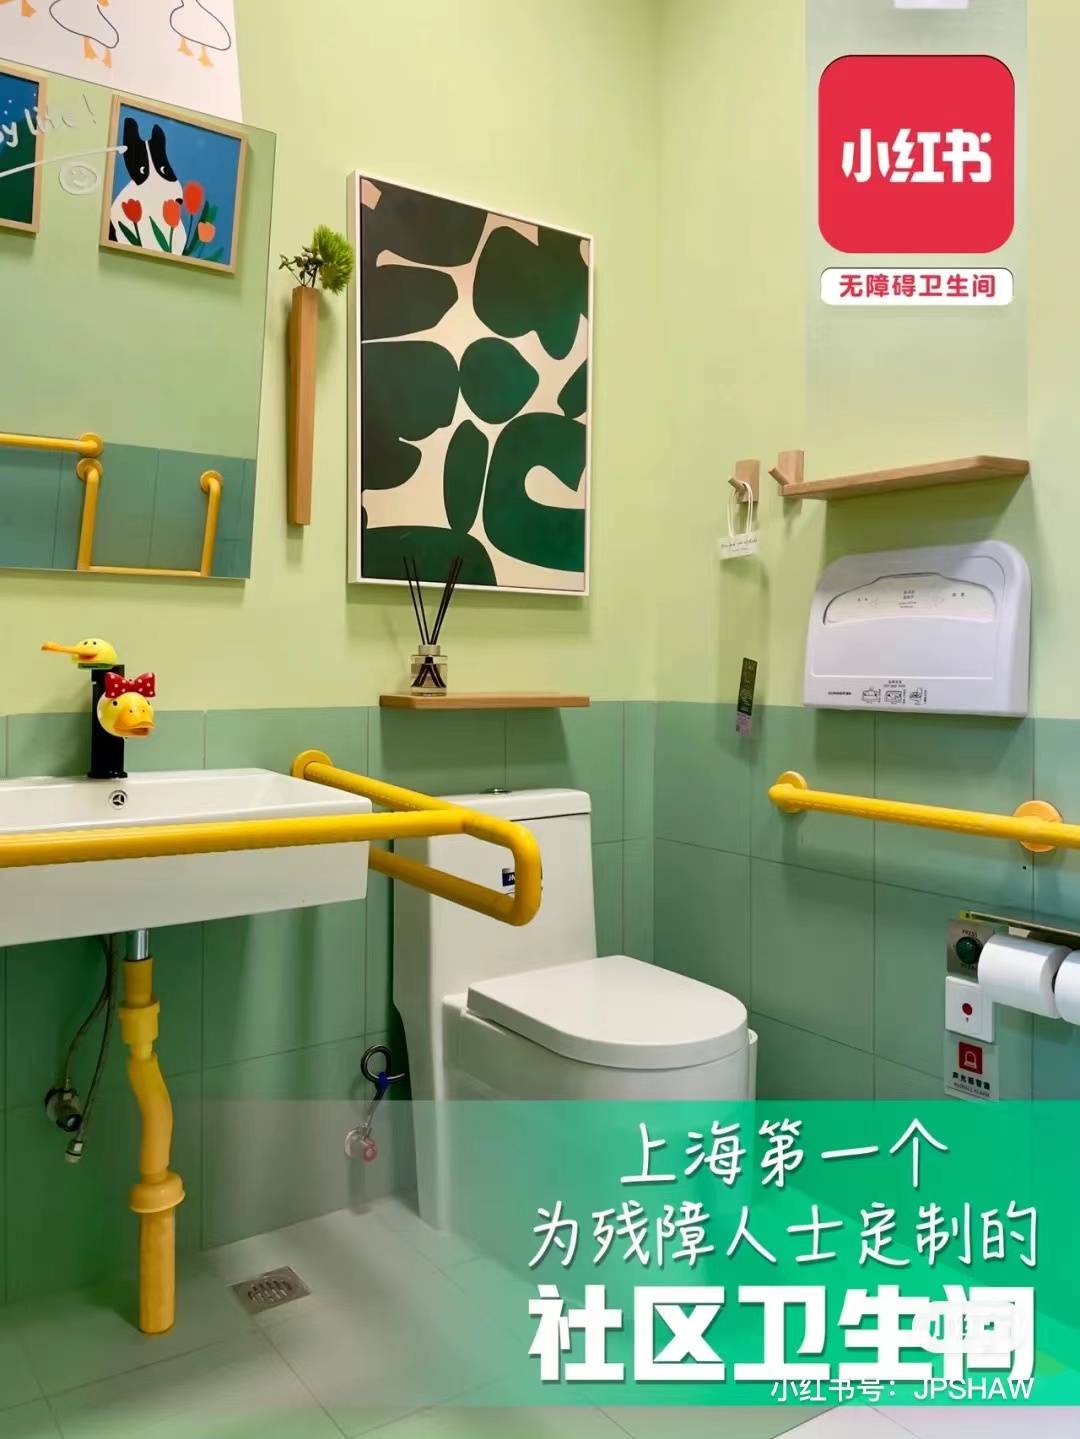 WechatIMG203 - Il bagno pubblico che Xiaohongshu ha trasformato per loro merita di essere “copiato”